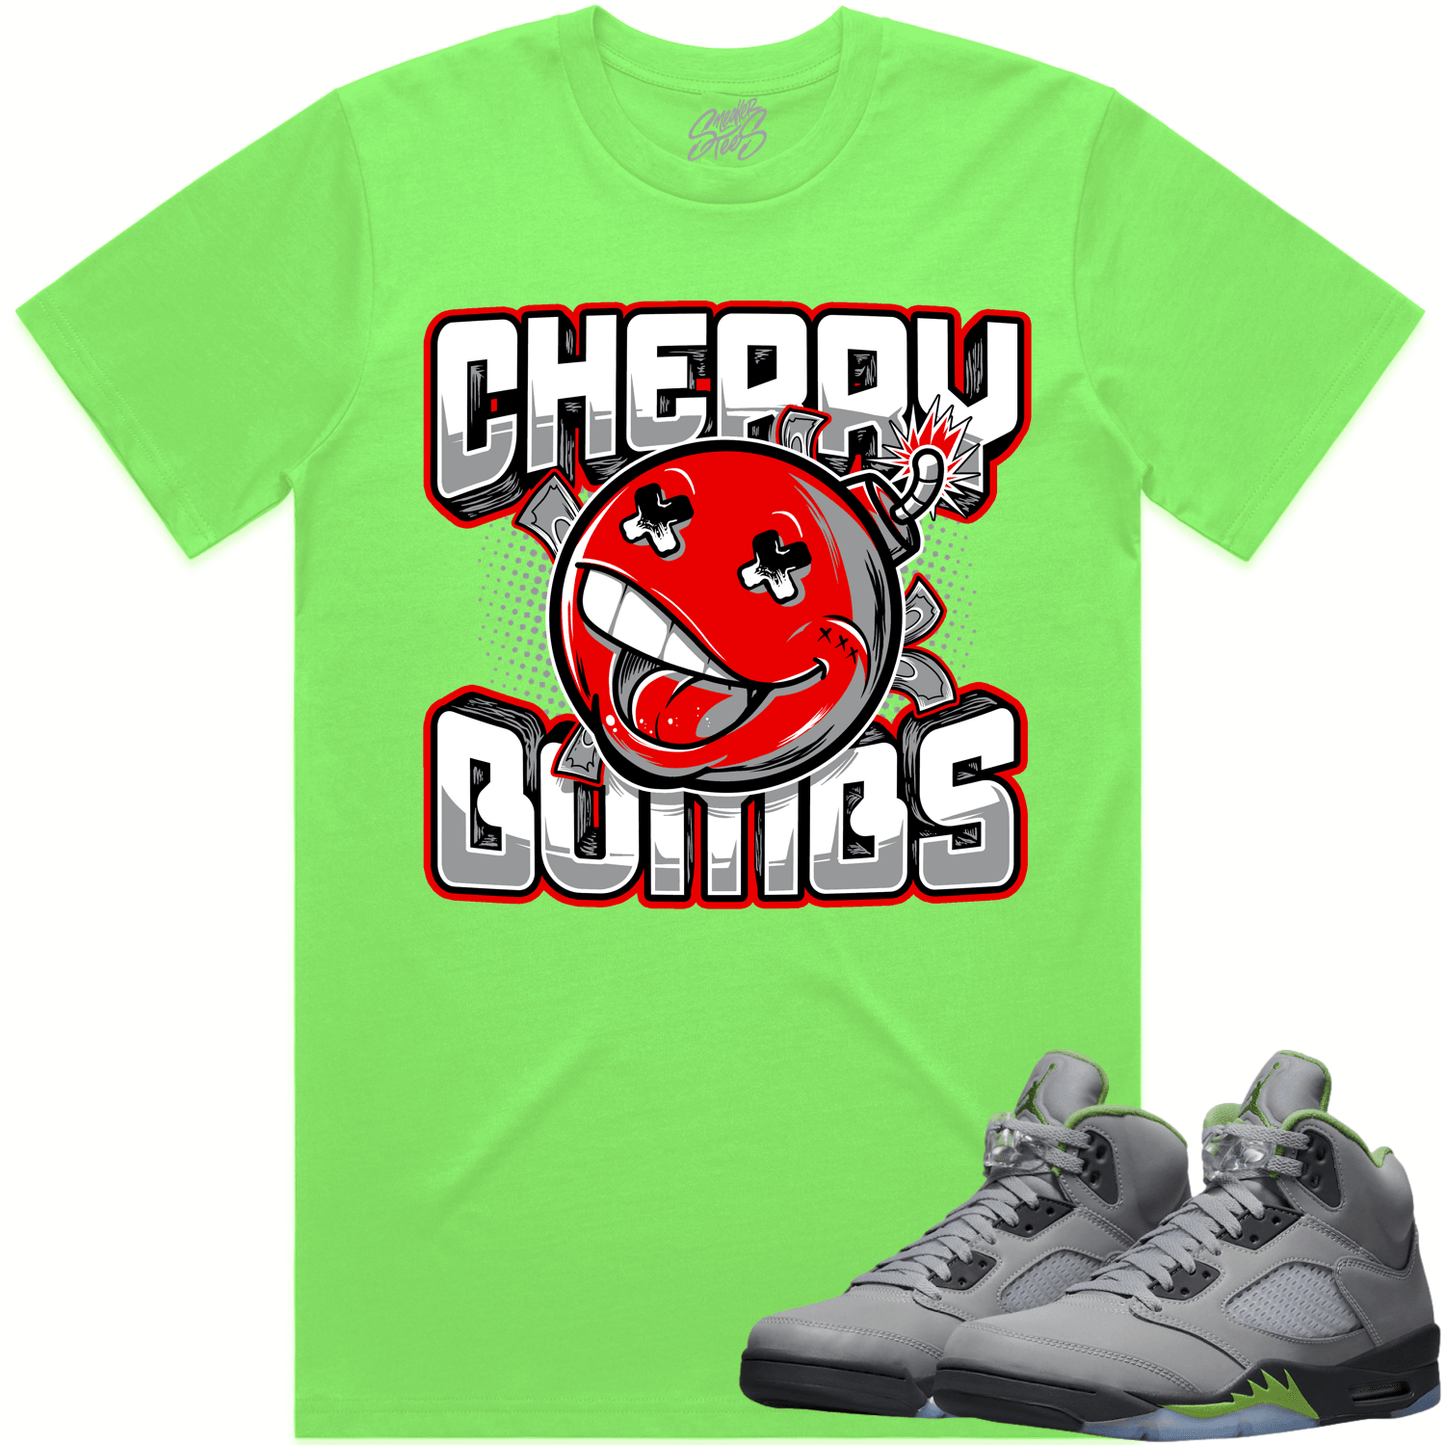 Green Bean 5s Shirt - Jordan 5 Green Bean Shirts - Cherry Bombs